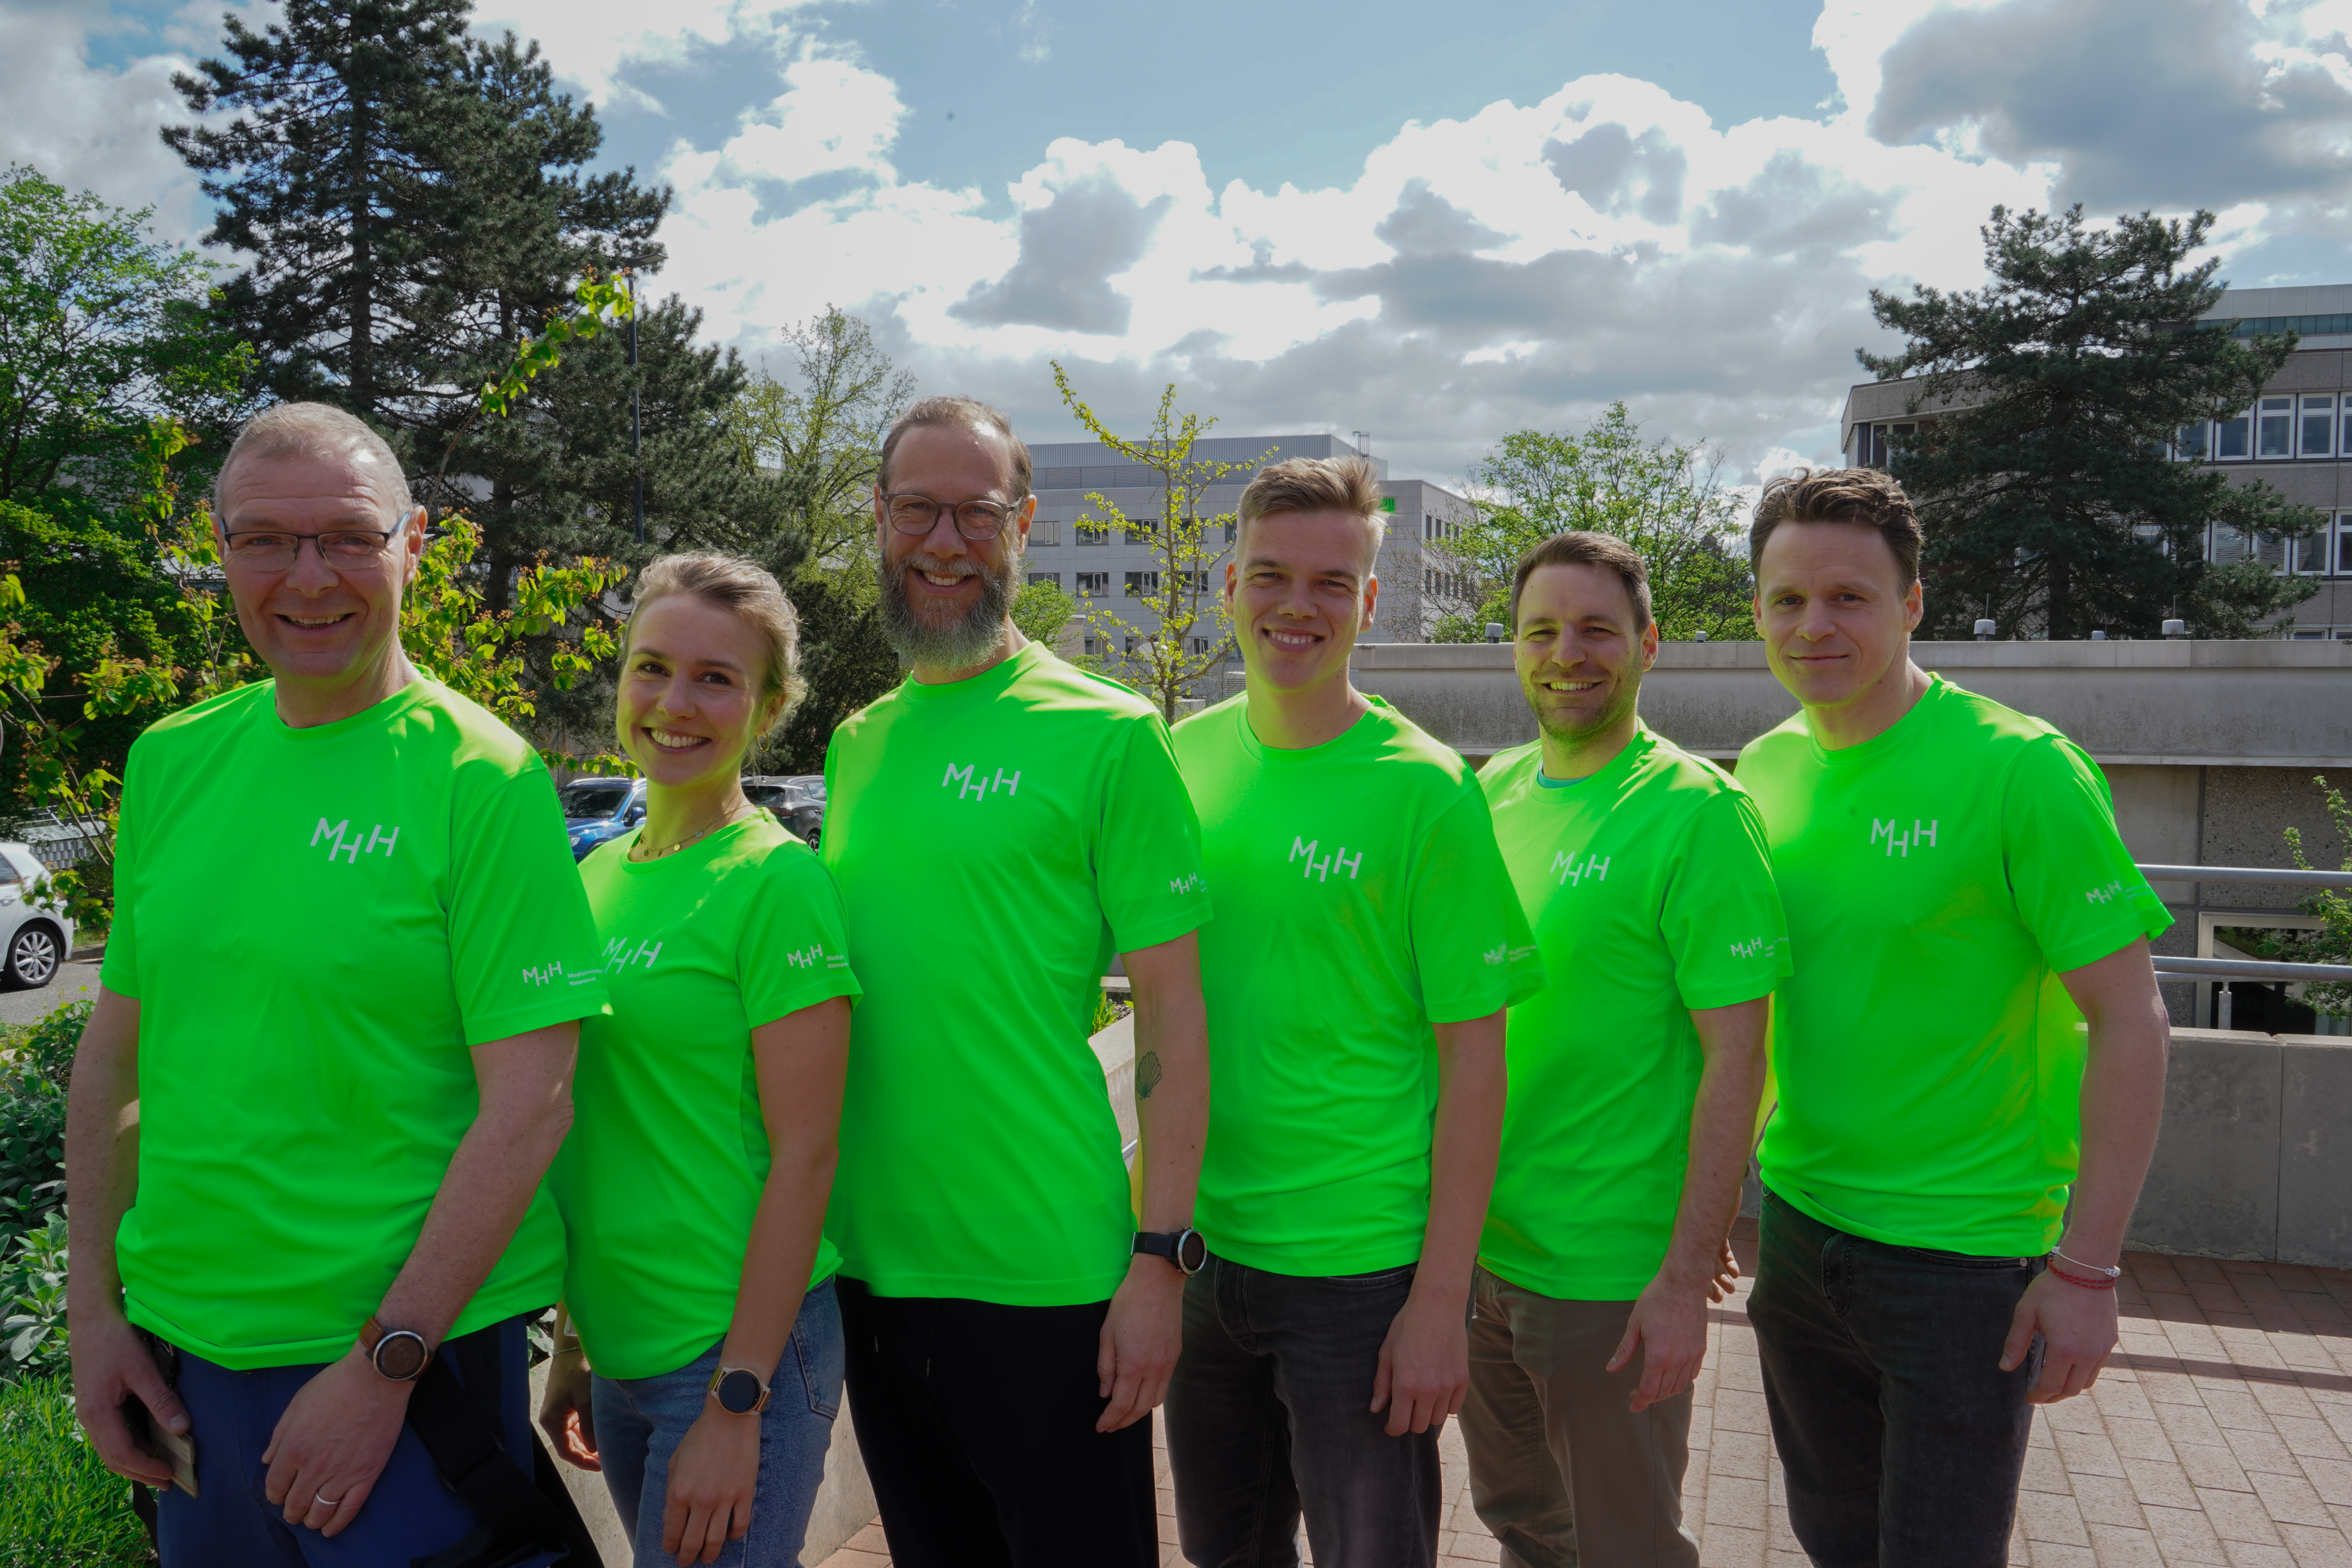 6 Menschen in leuchtend grünen Sport-Shirts mit weißem MHH-Aufdruck auf der Brust und dem Ärmel